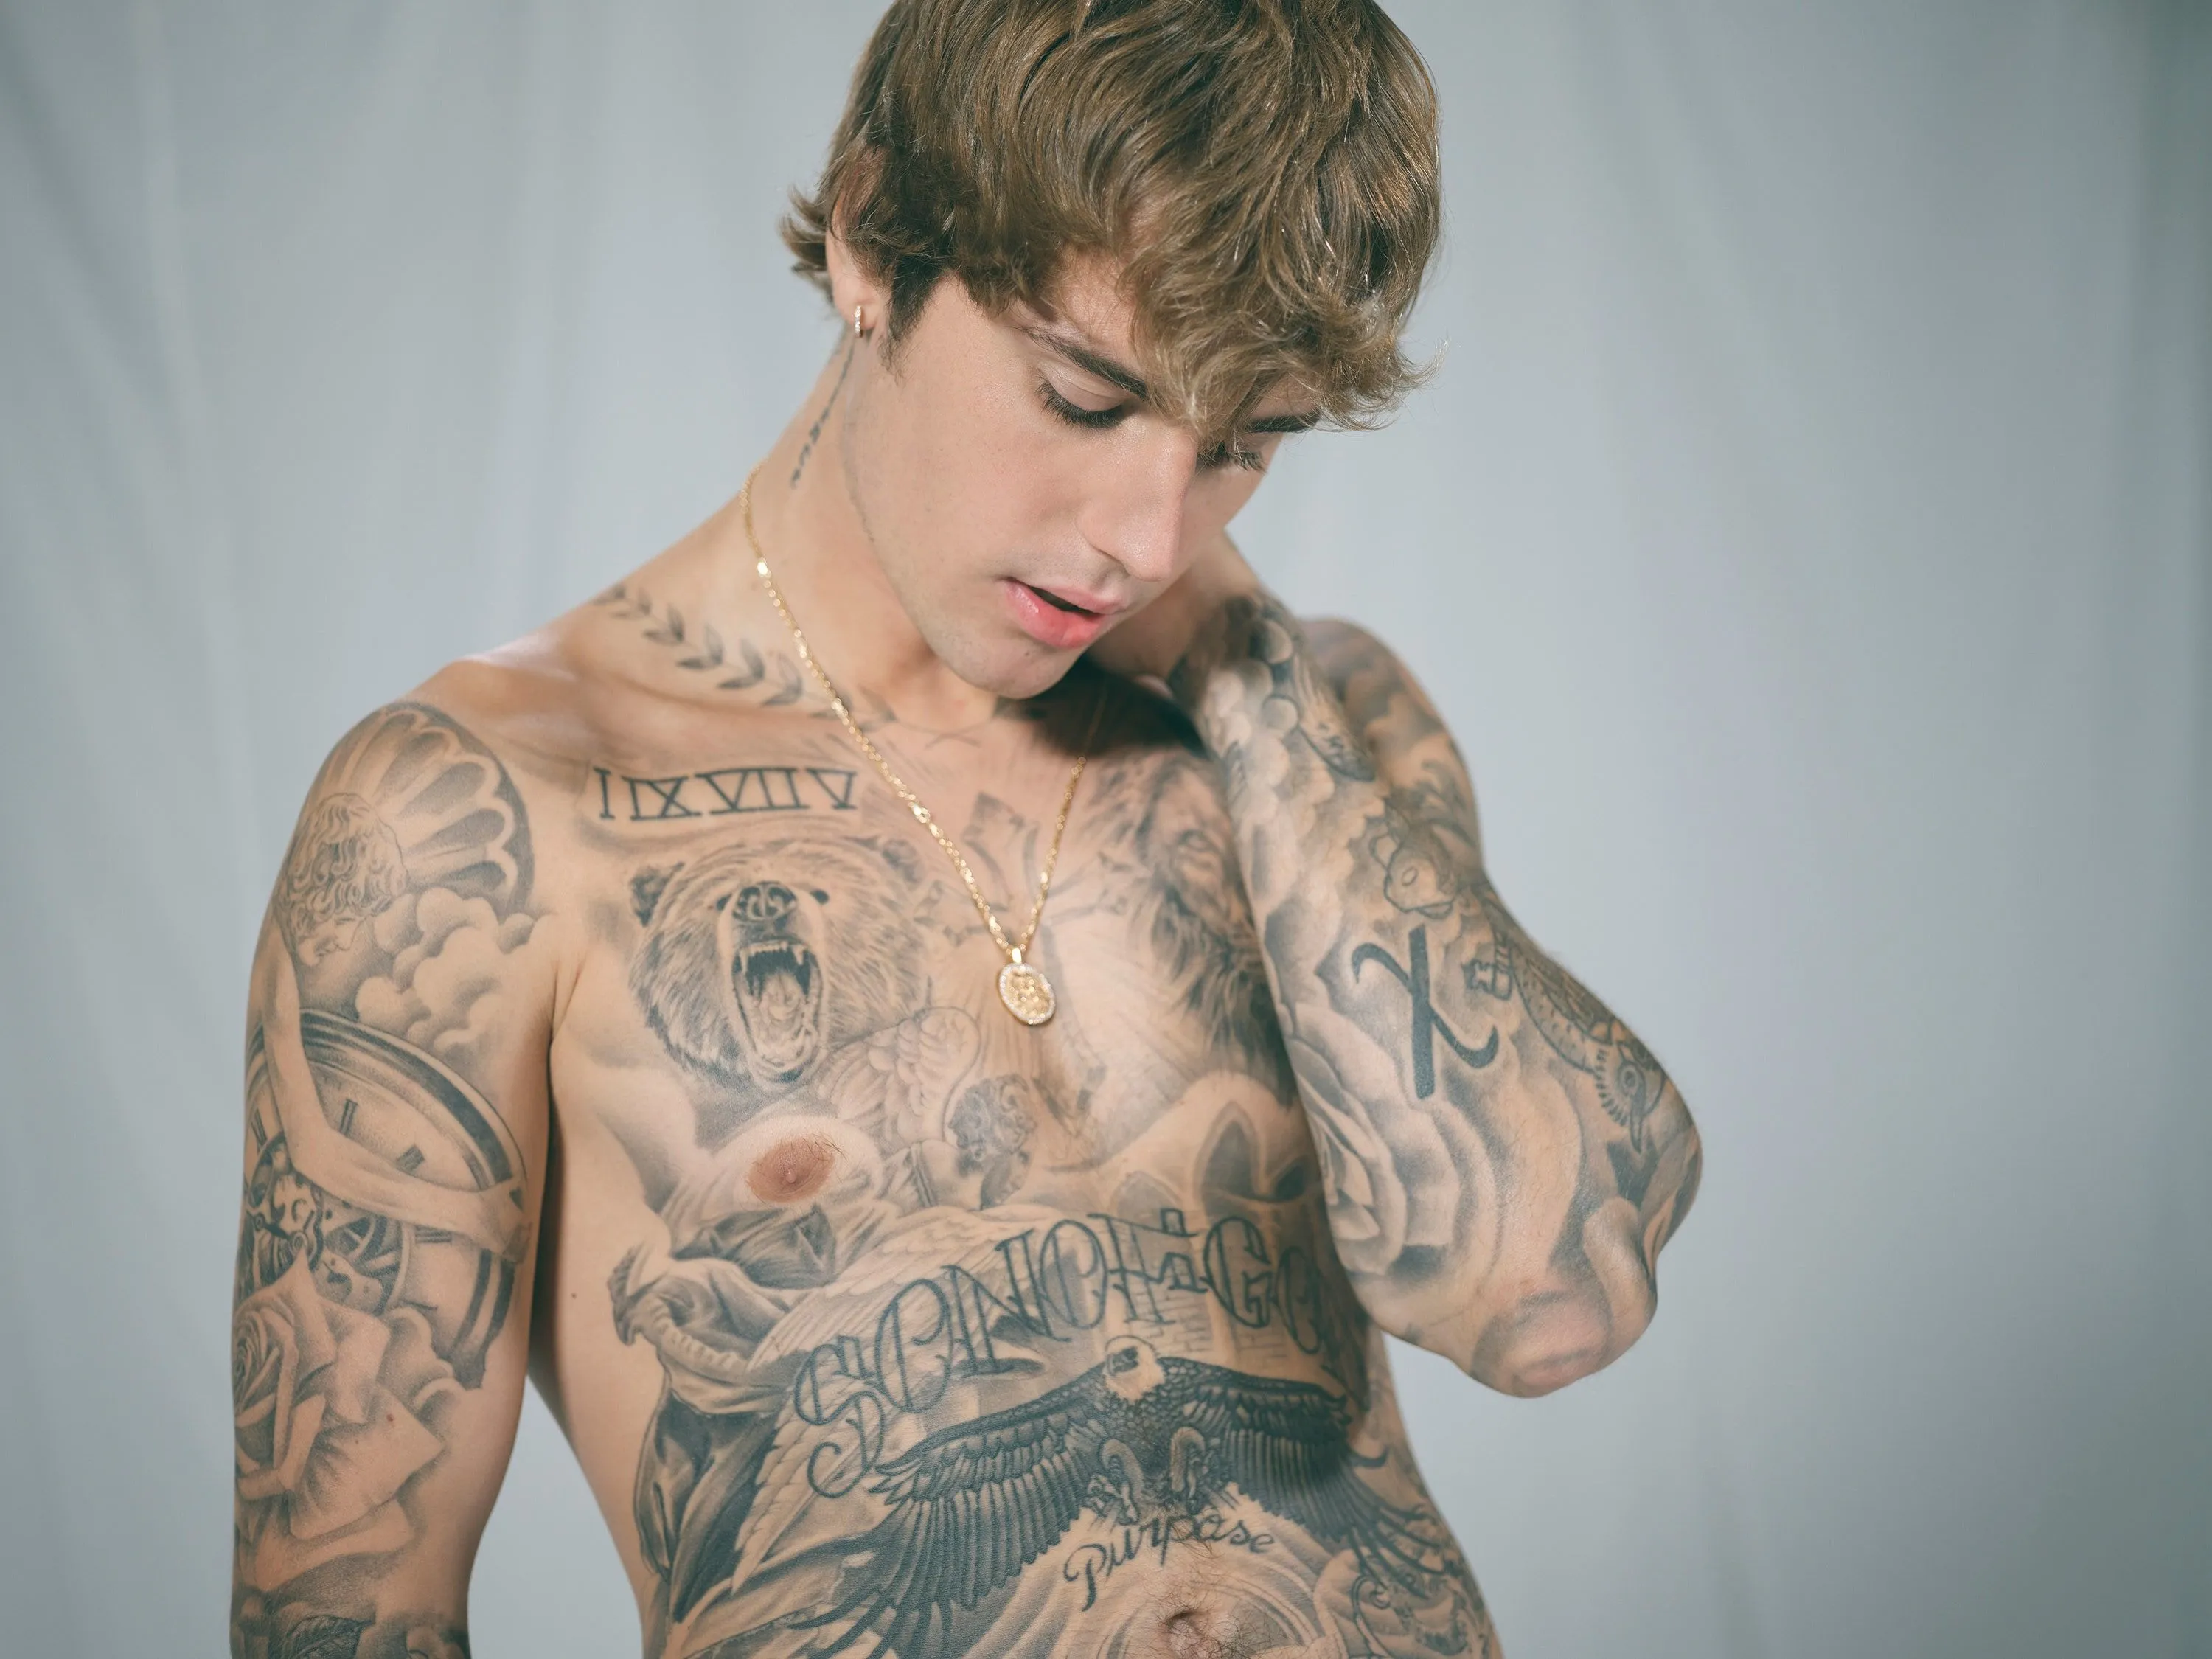 El significado de los tatuajes de Justin Bieber | GQ